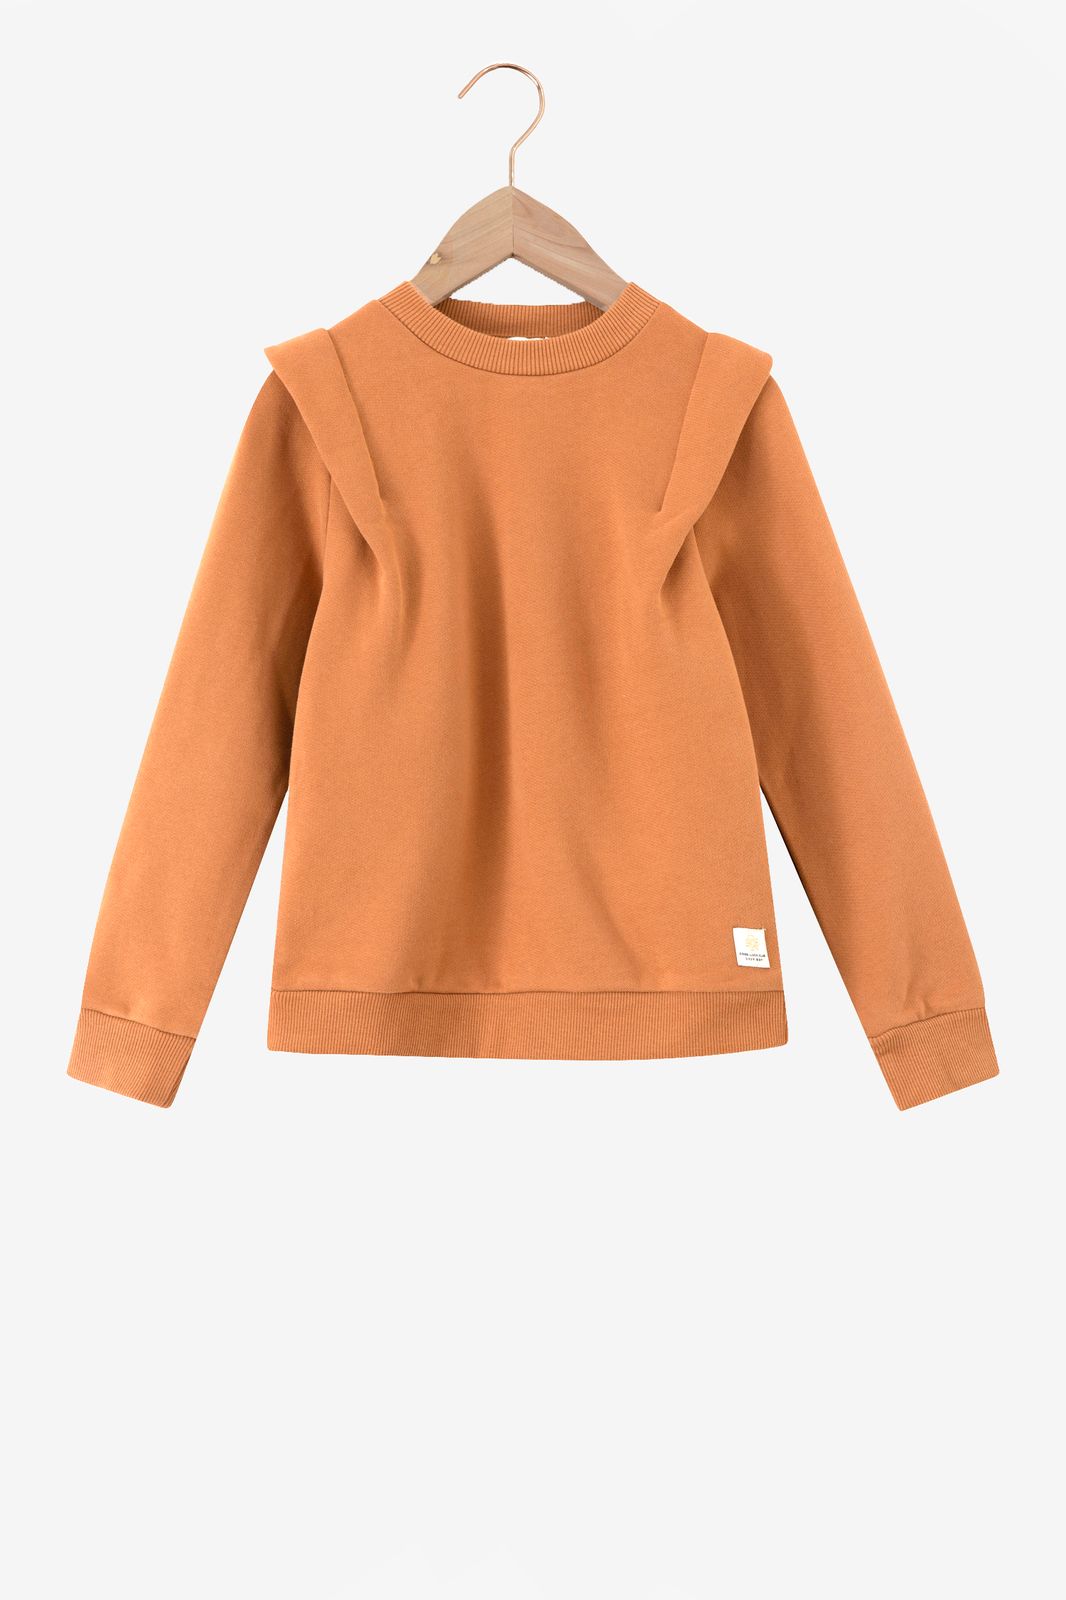 Sweater mit Schulter-Details - braun